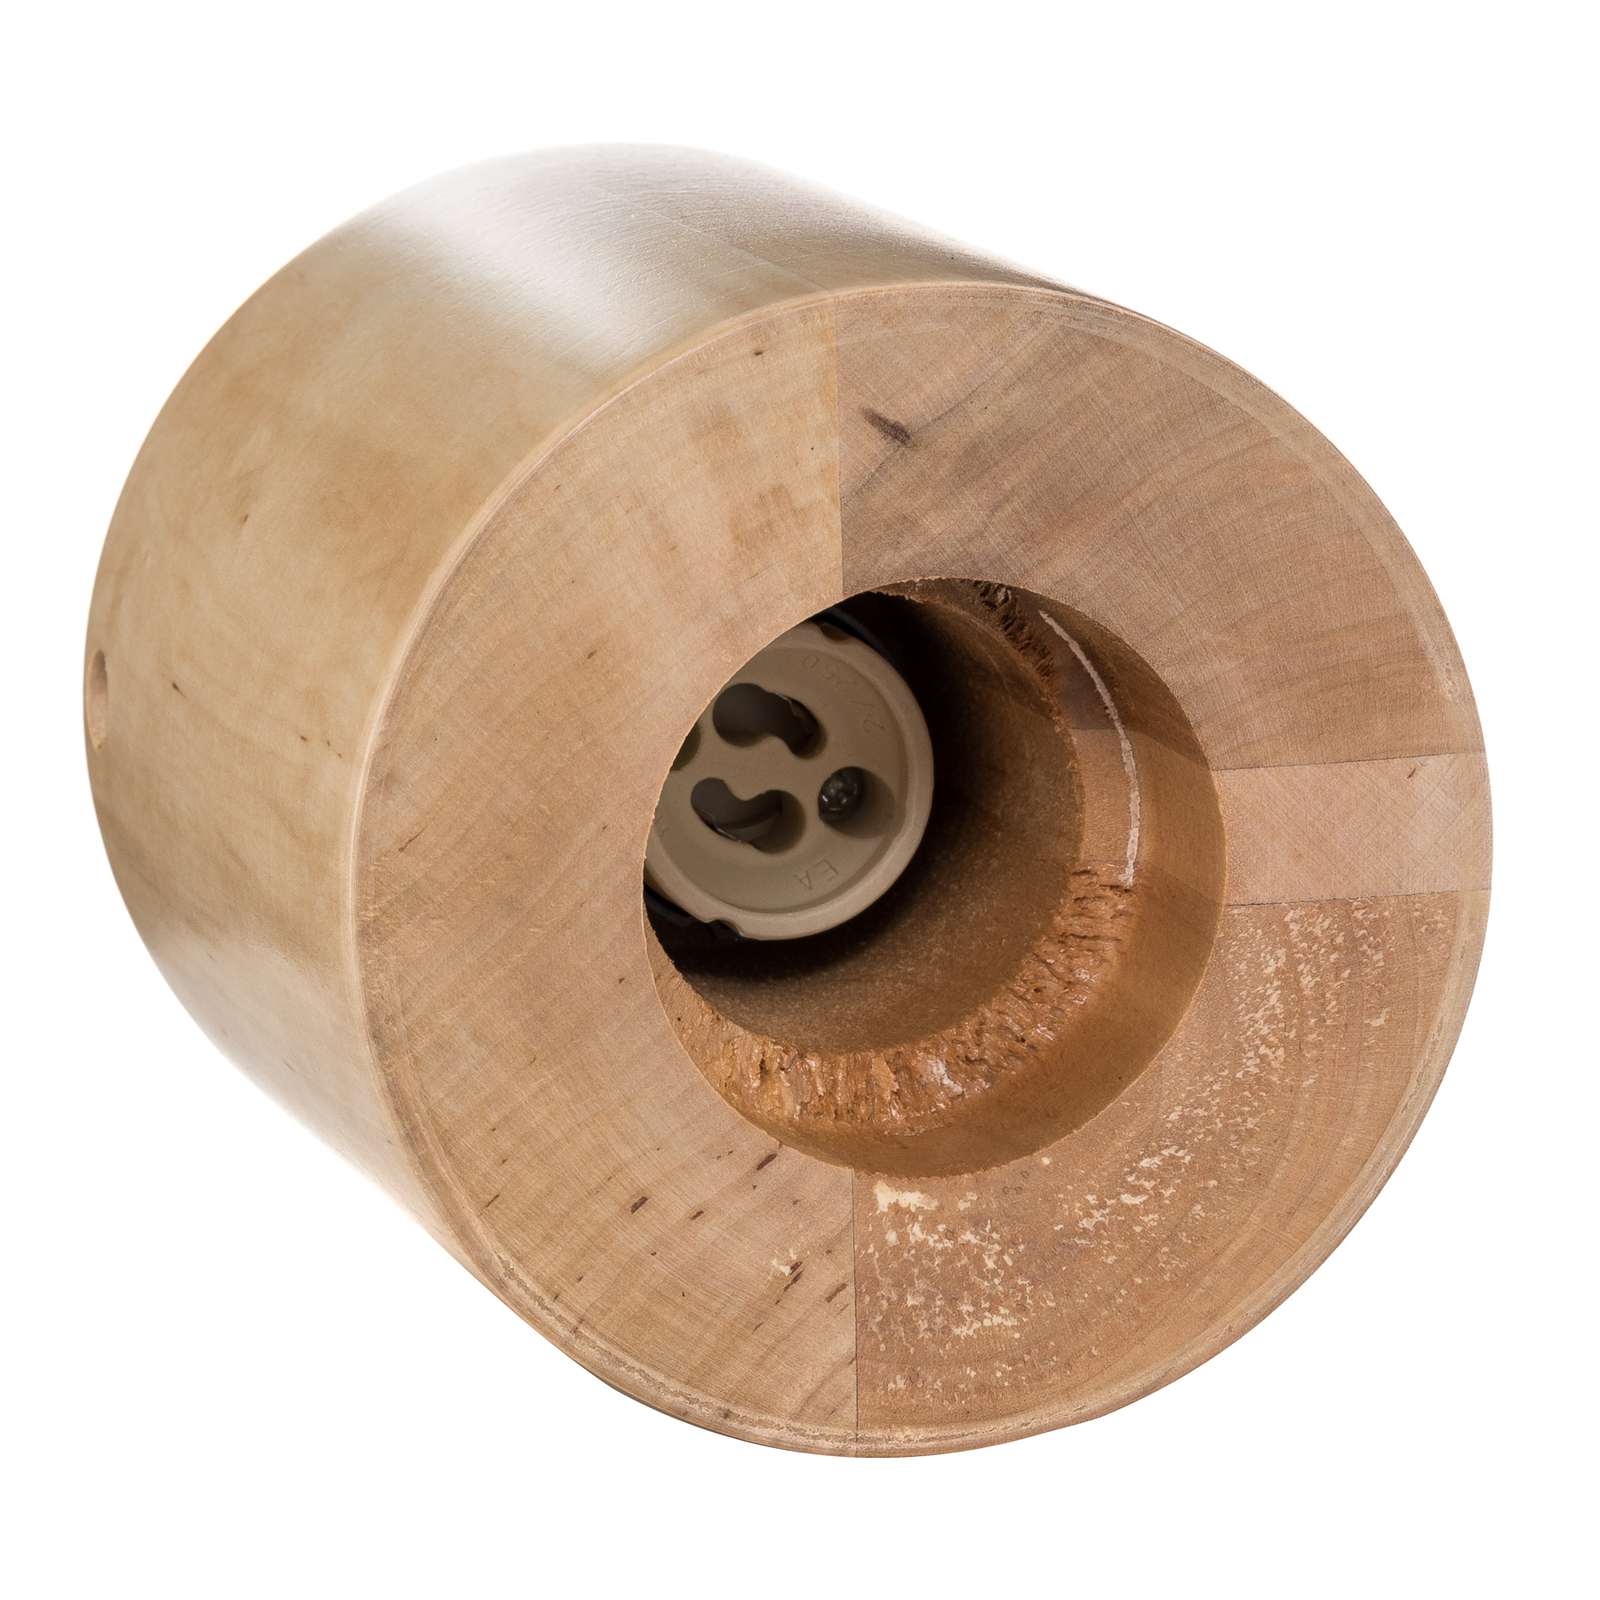 Plafonnier Ara en forme de cylindre en bois